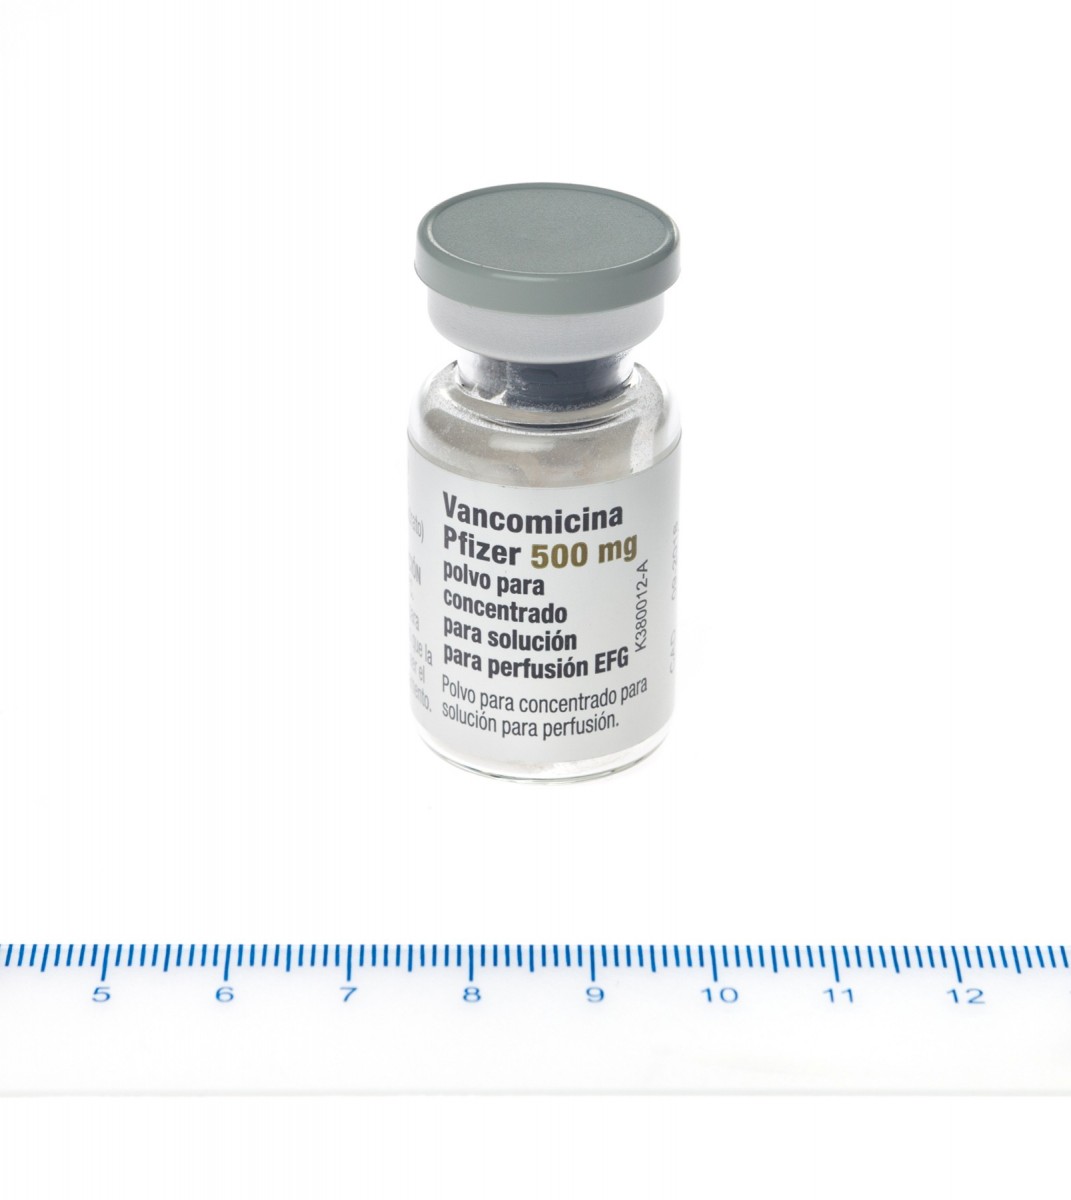 VANCOMICINA PFIZER 500 mg POLVO PARA CONCENTRADO PARA SOLUCION PARA PERFUSION EFG , 1 vial fotografía de la forma farmacéutica.